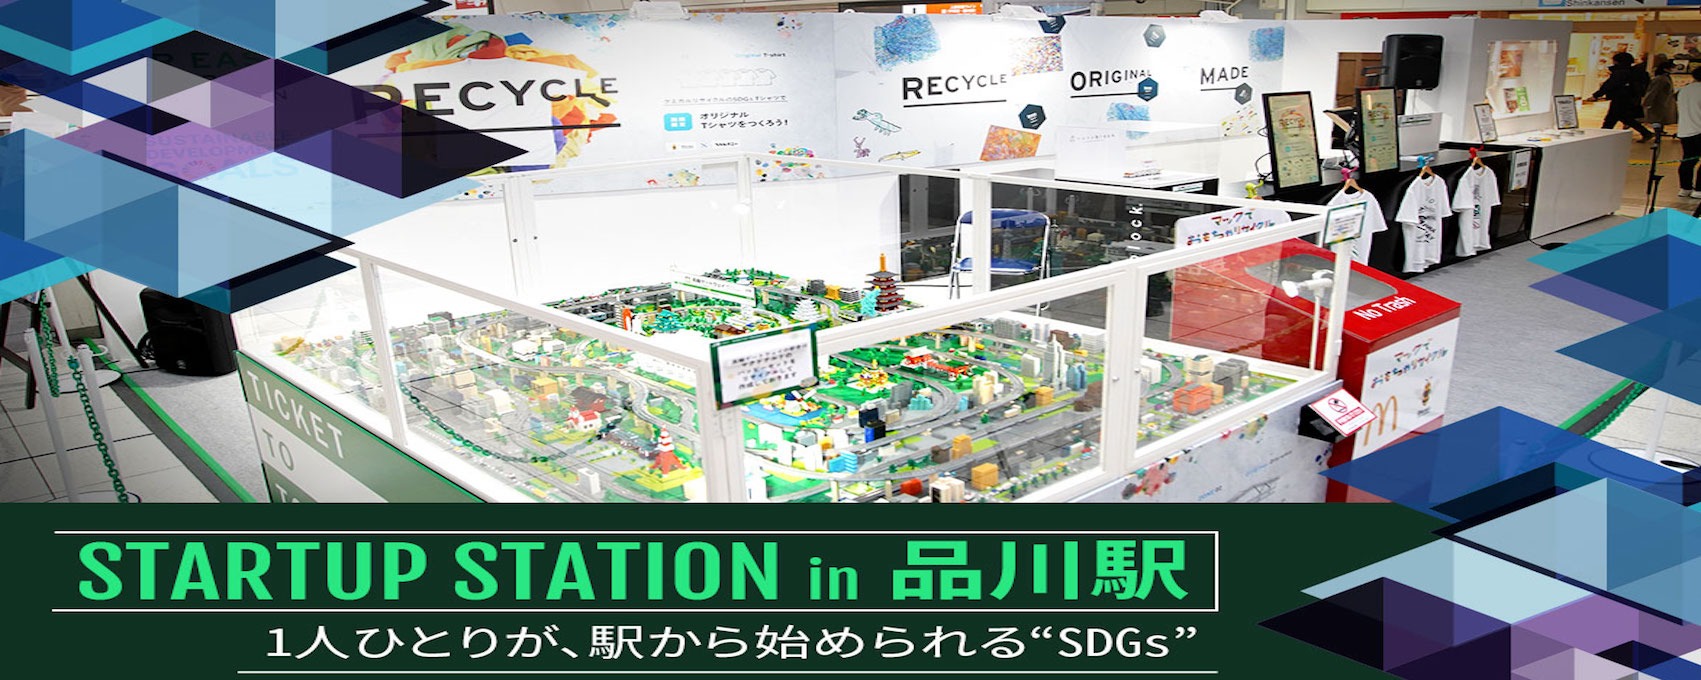 1人ひとりが、駅から始められる “SDGs” ―JR東日本「STARTUP STATION in 品川駅」